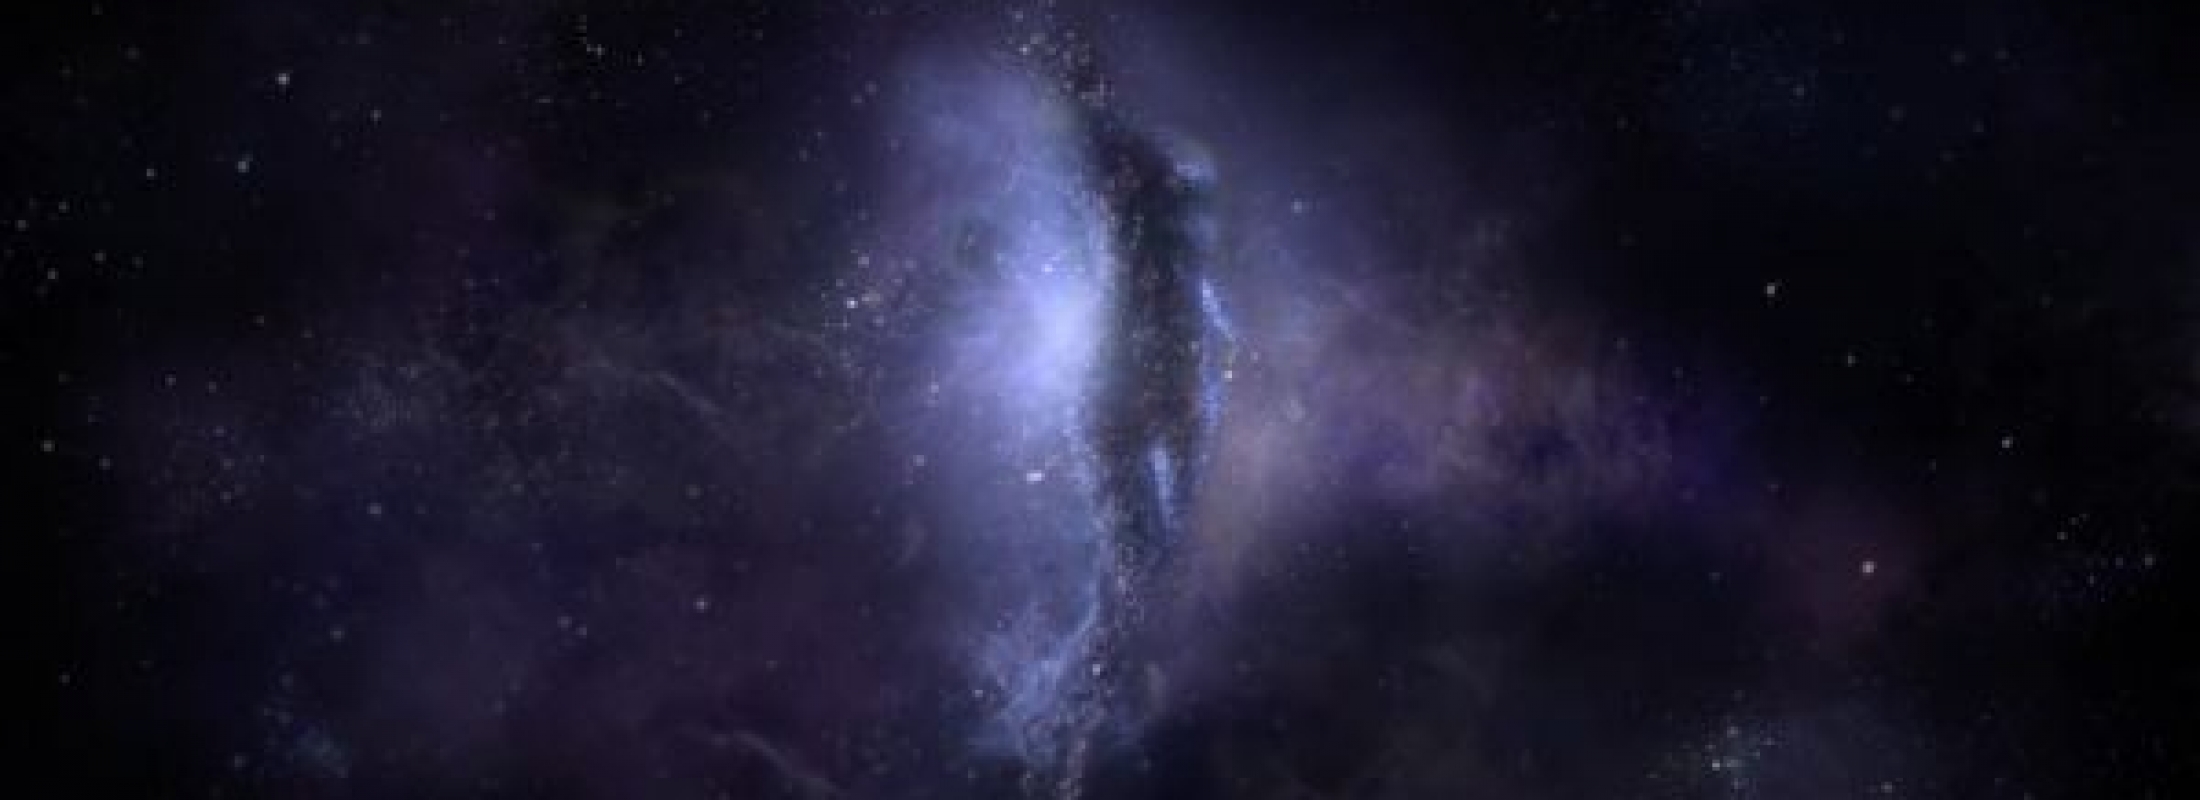 Общение с богиней бесконечности. Часть 2. Духовная эволюция Вселенной